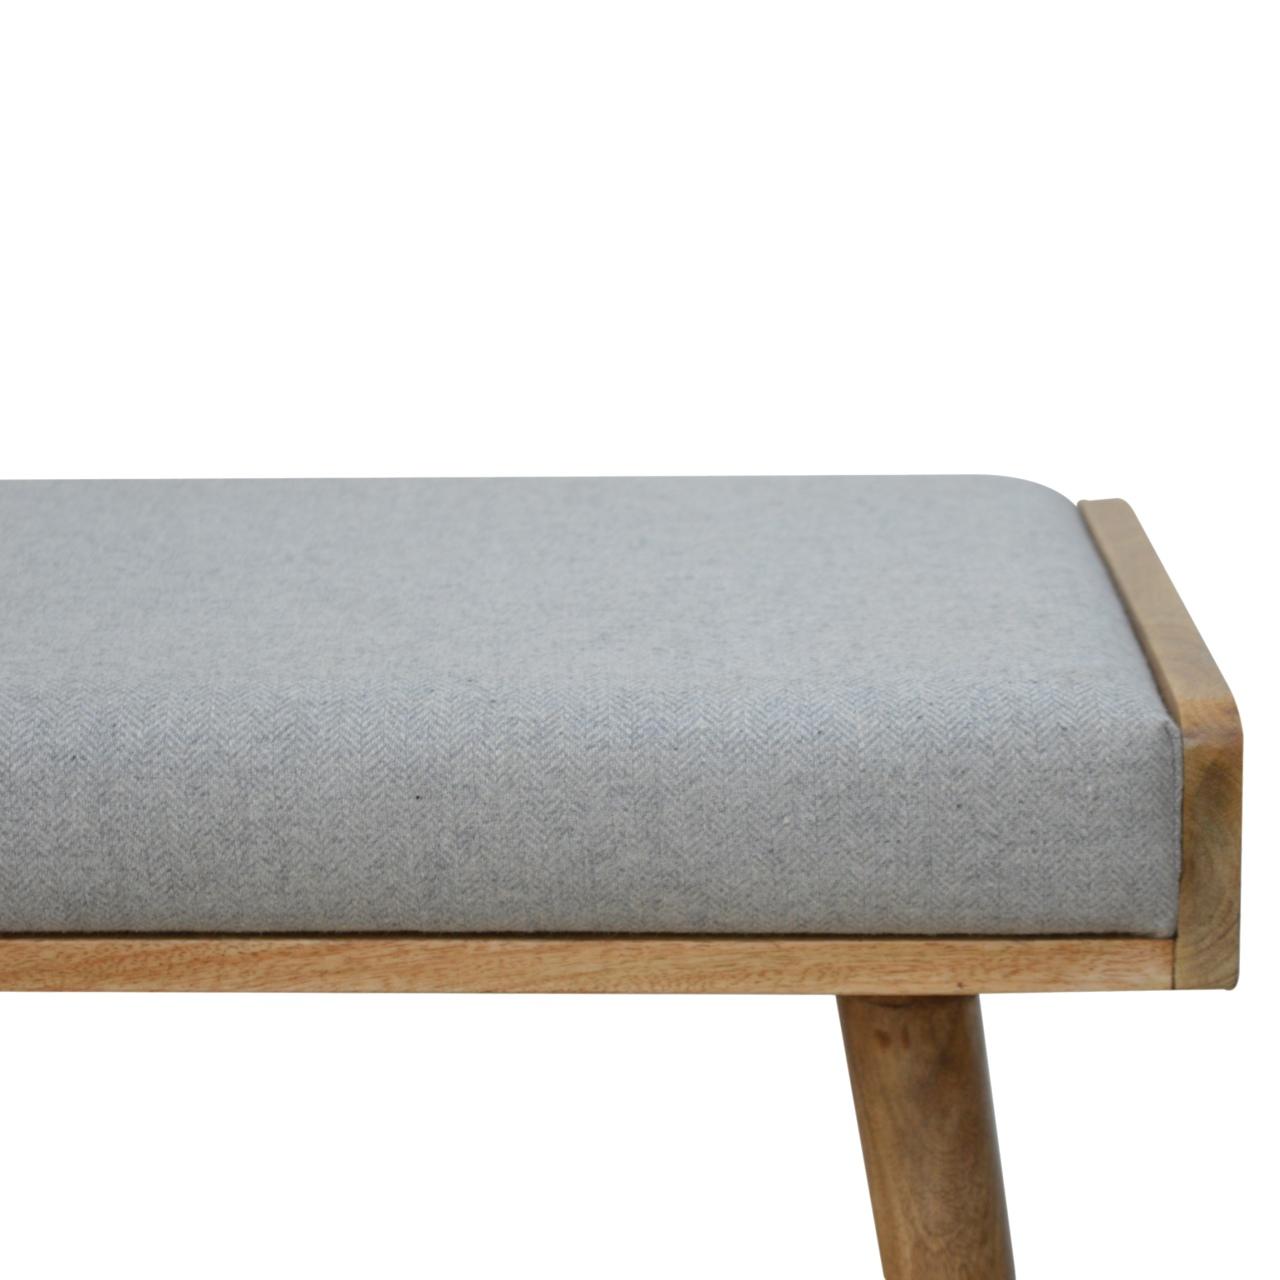 Grey Tweed Solid Wood Footstool